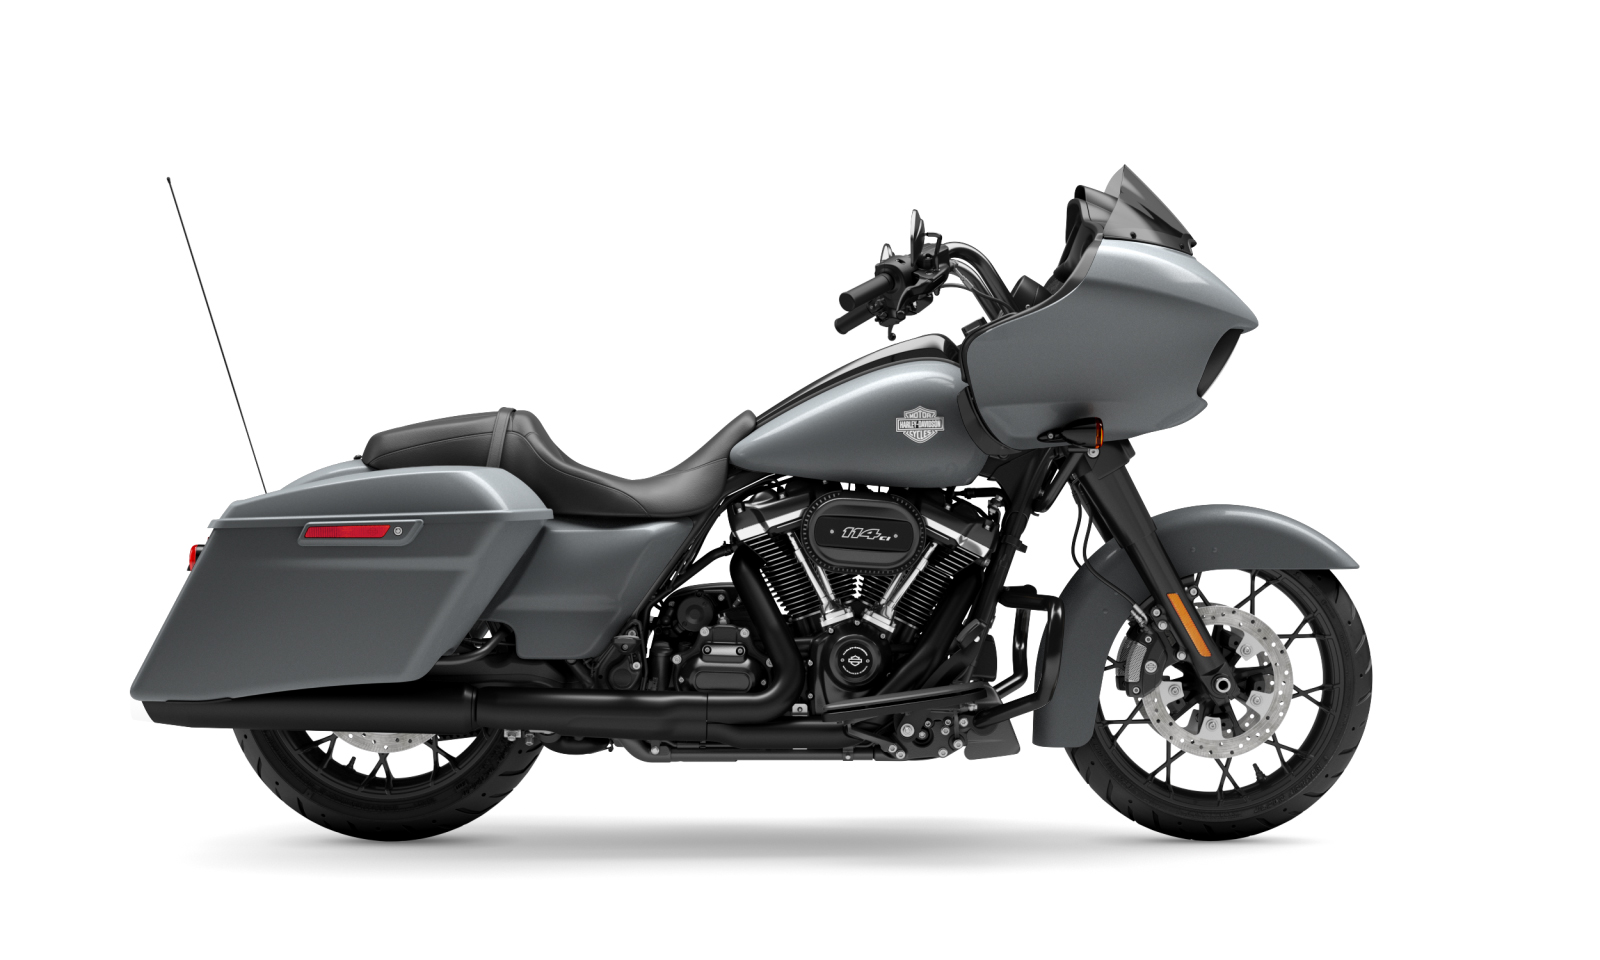 2021 HarleyDavidson Touring  CVO ra mắt hoành tráng như khủng long